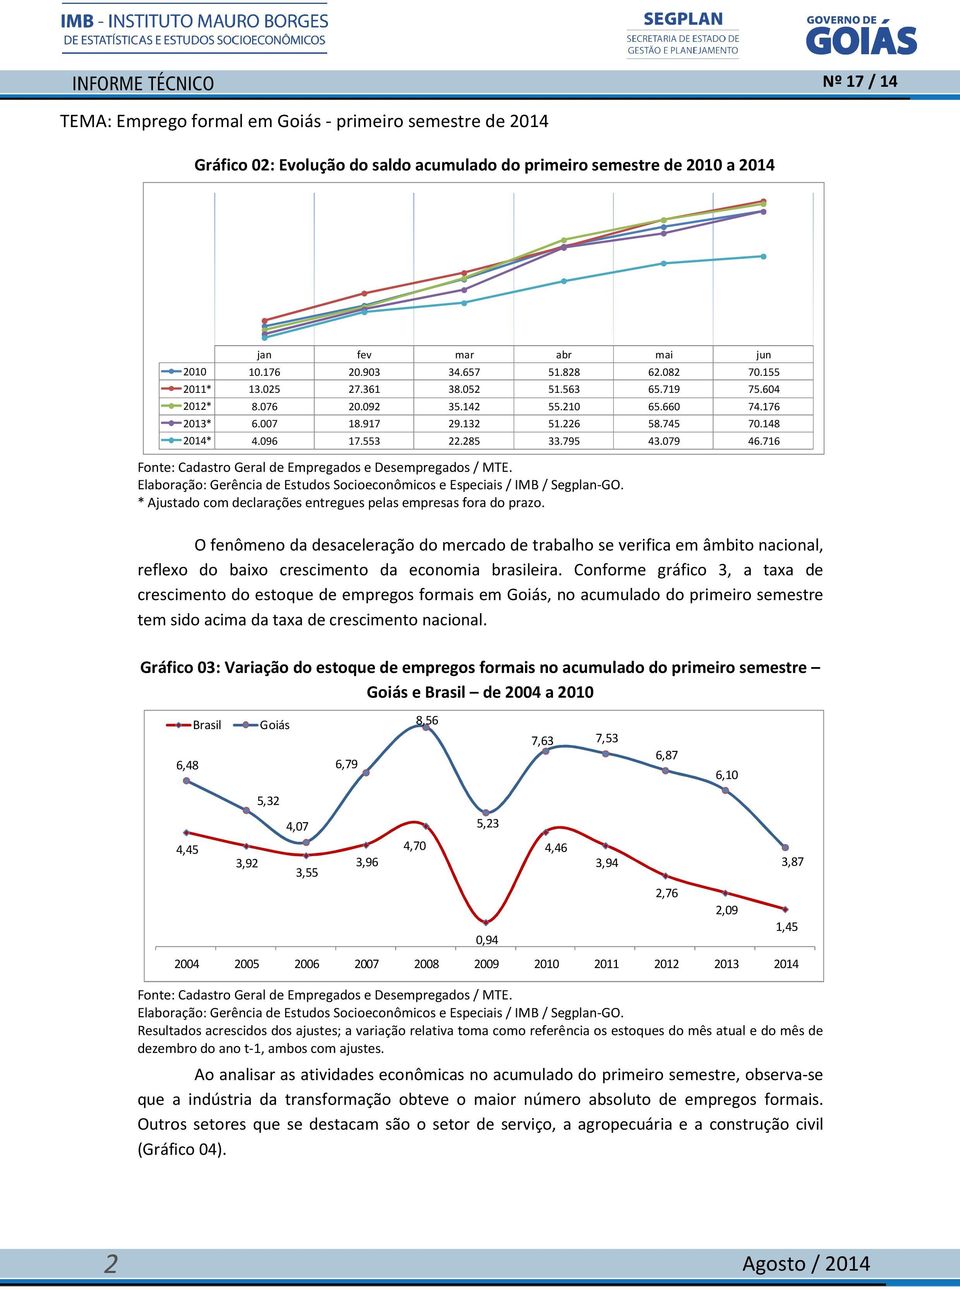 716 O fenômeno da desaceleração do mercado de trabalho se verifica em âmbito nacional, reflexo do baixo crescimento da economia brasileira.